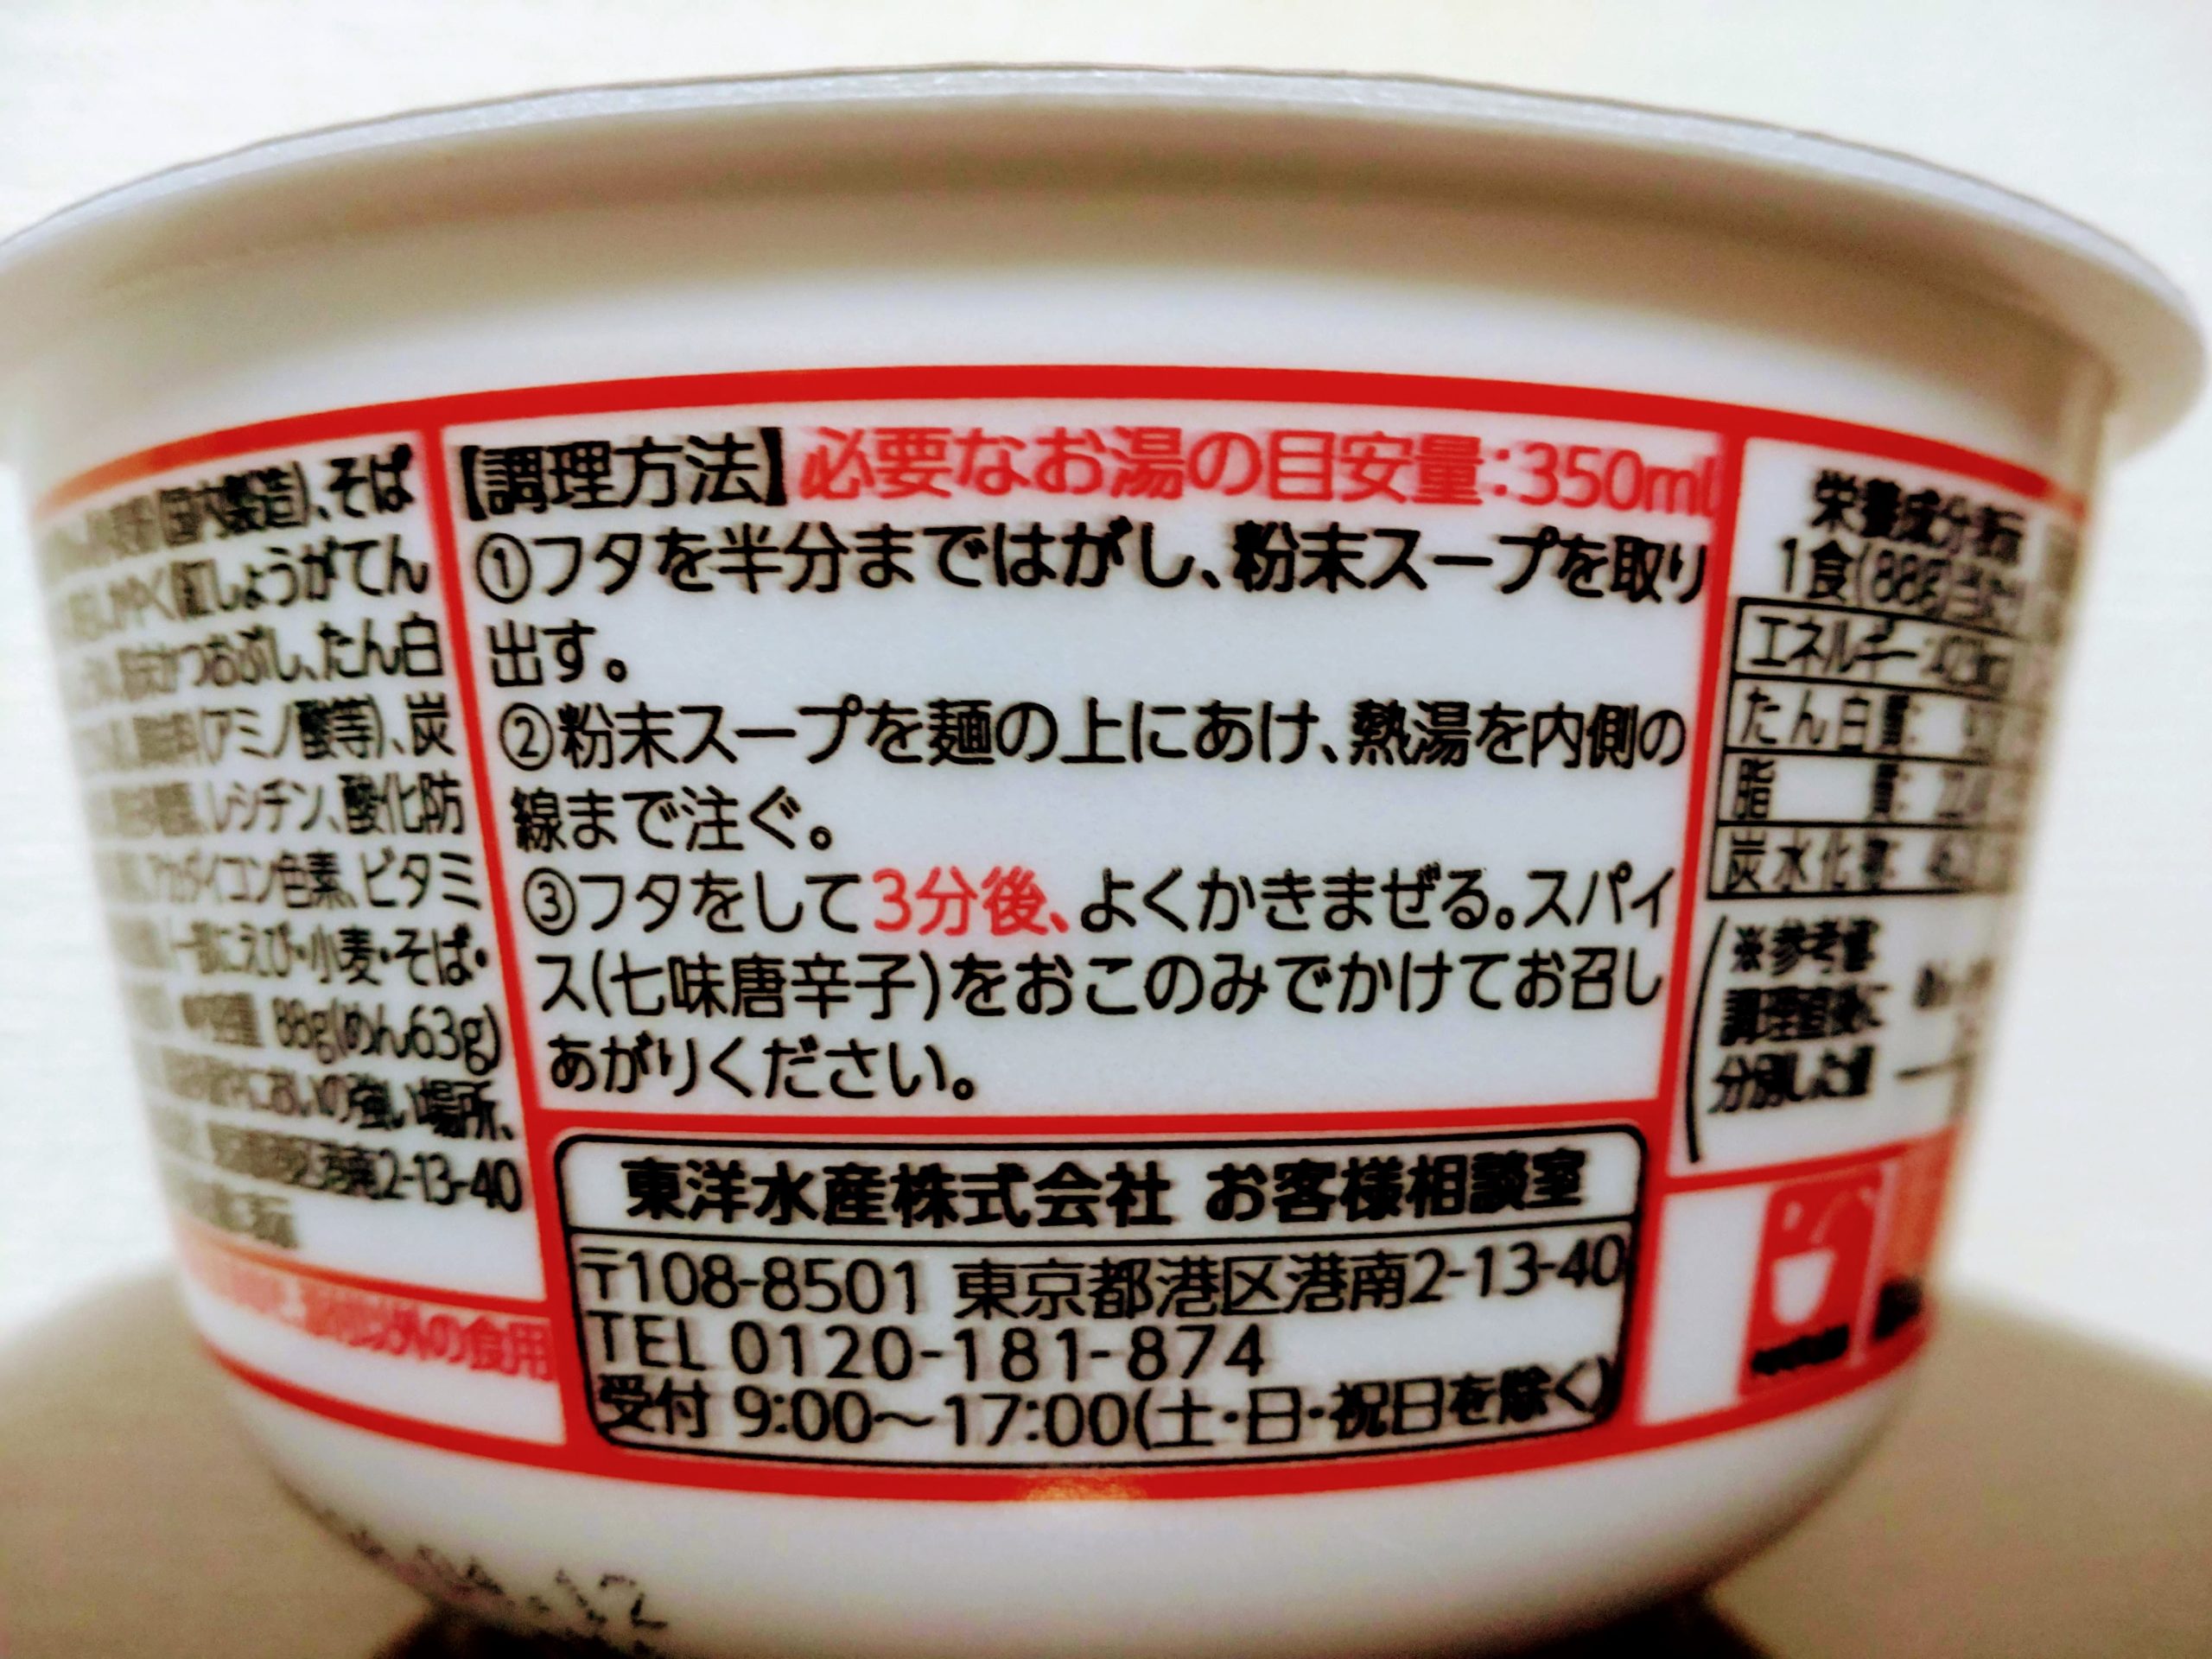 マルちゃん 赤い天ぷらそばの調理方法